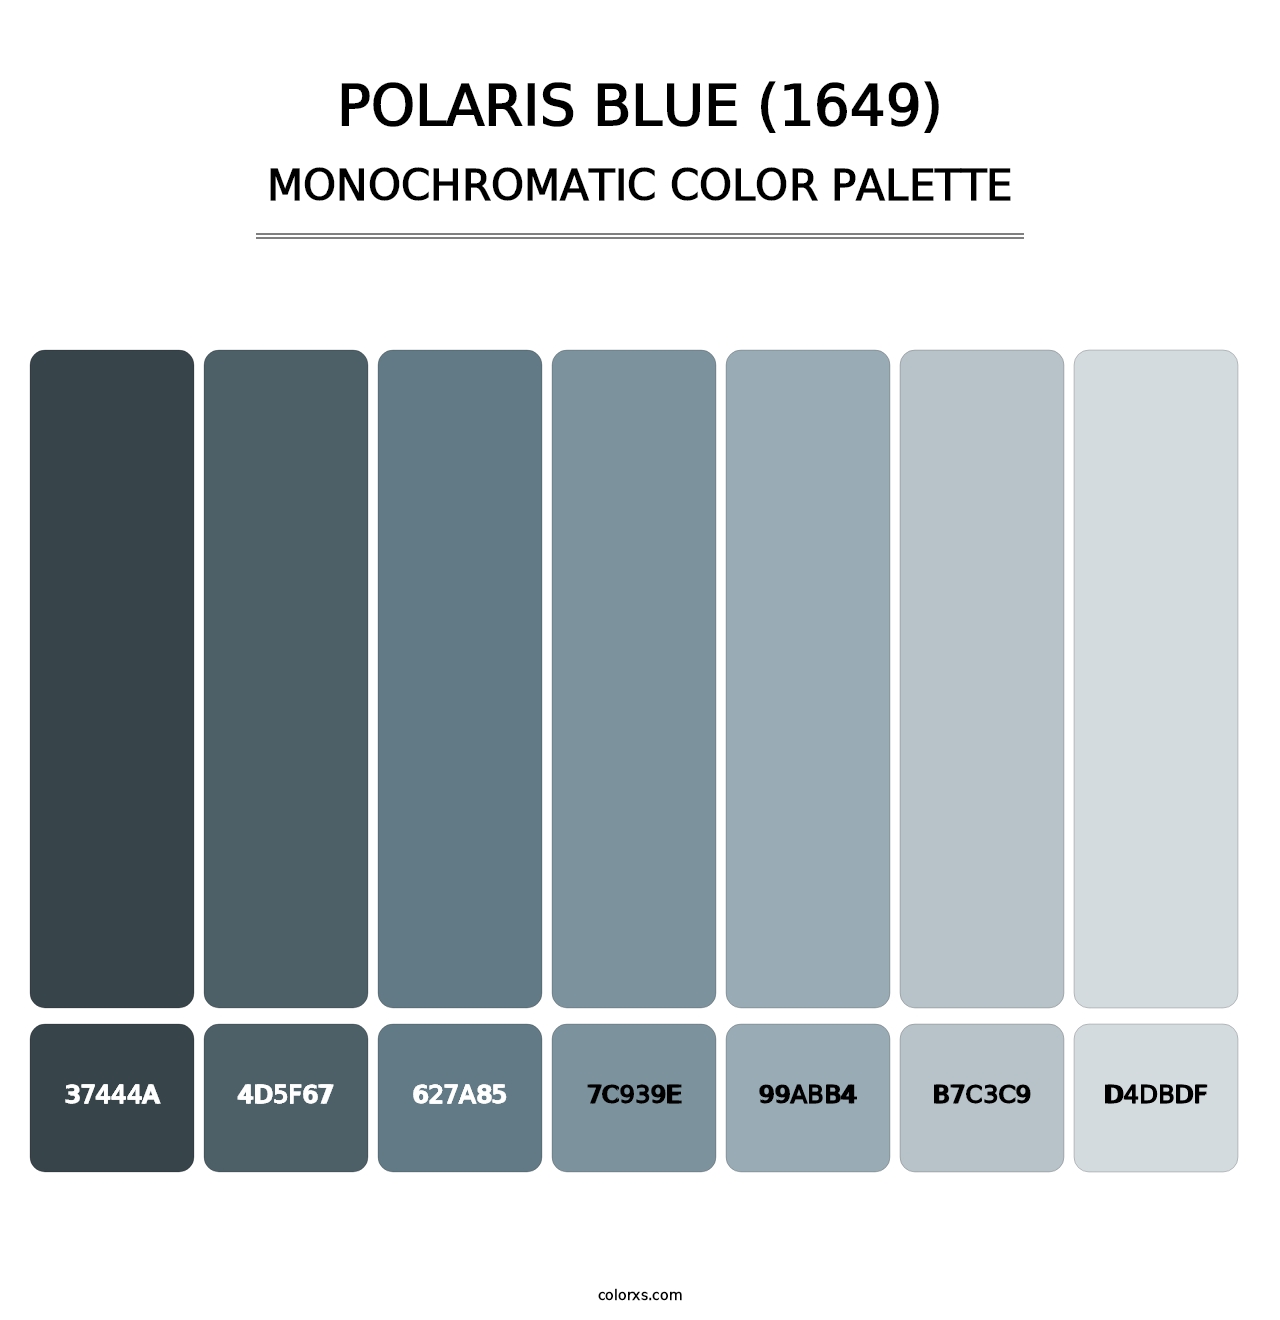 Polaris Blue (1649) - Monochromatic Color Palette